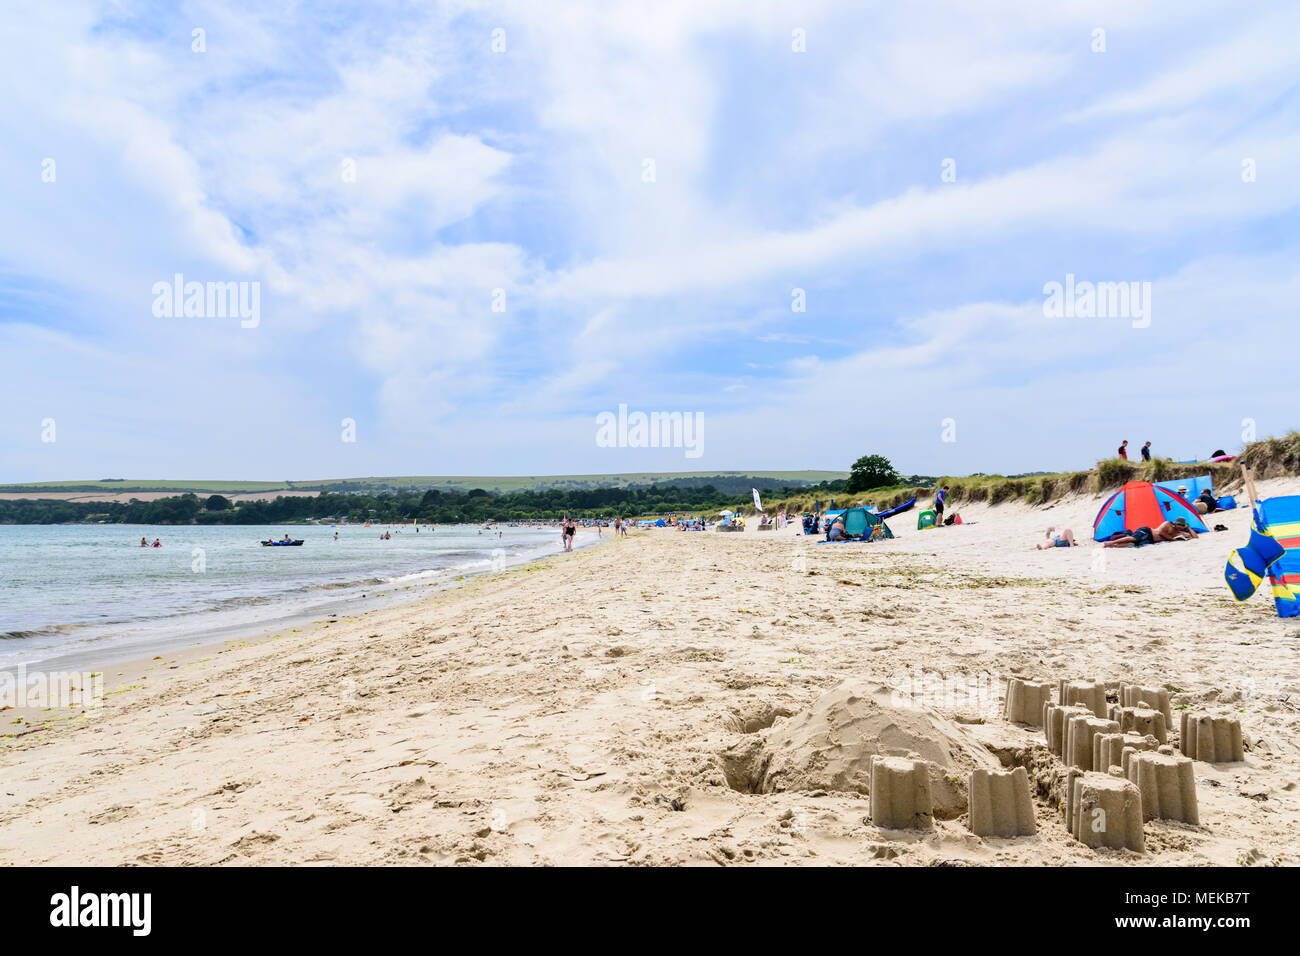 The beach at Studland Bay, Dorset Stock Photo